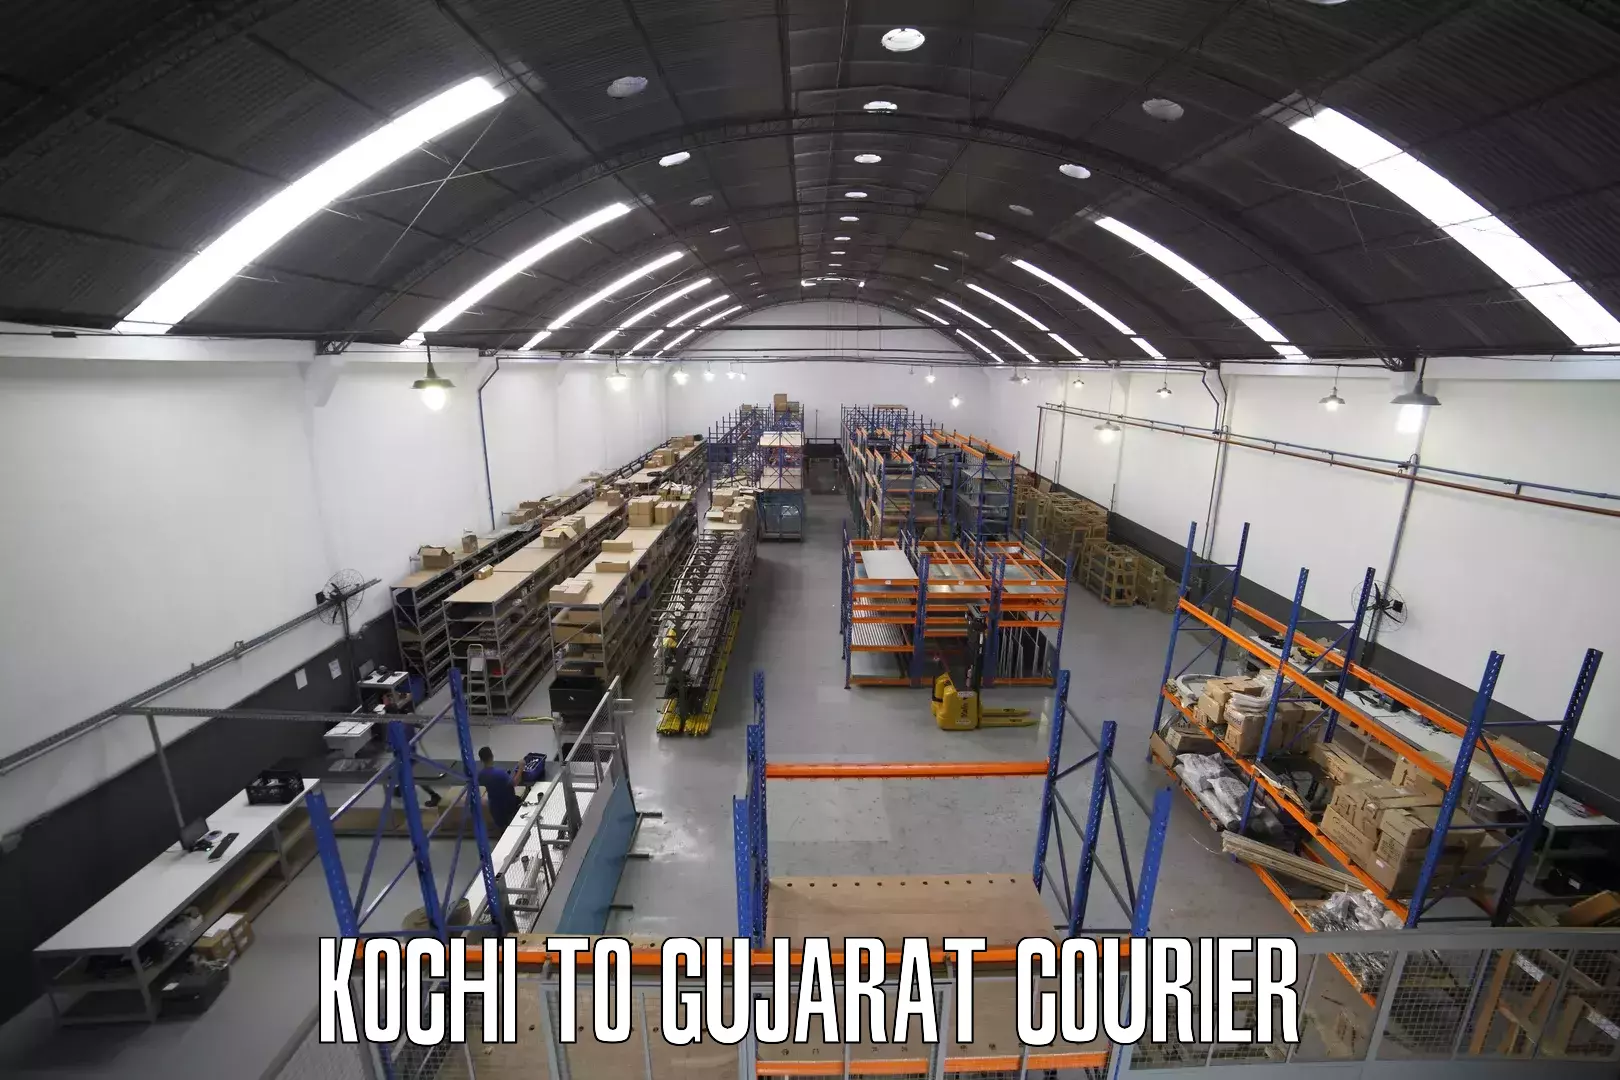 High-performance logistics Kochi to Gujarat